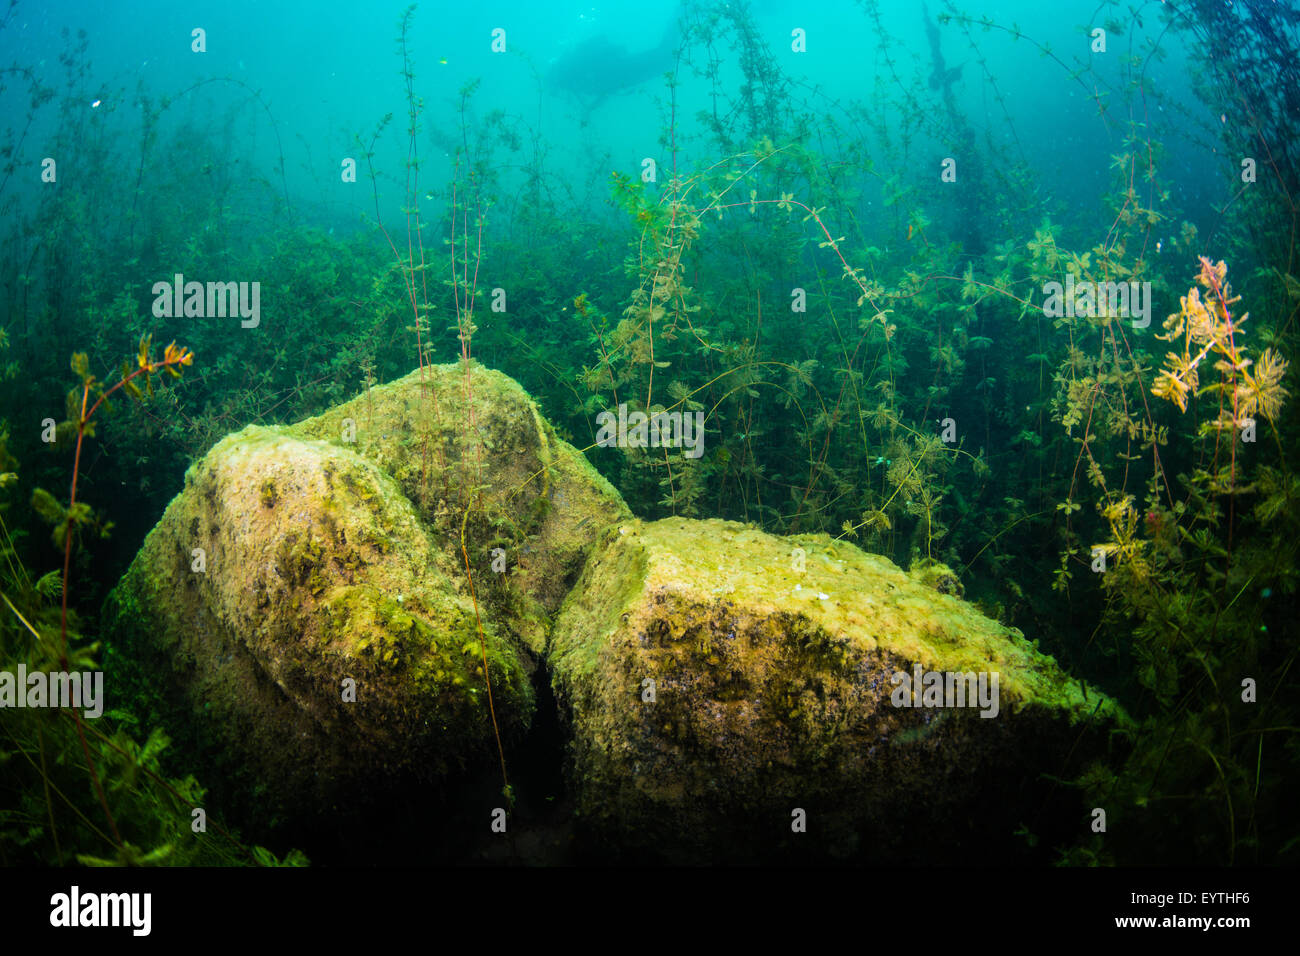 Underwater landscape freshwater lake Stock Photo